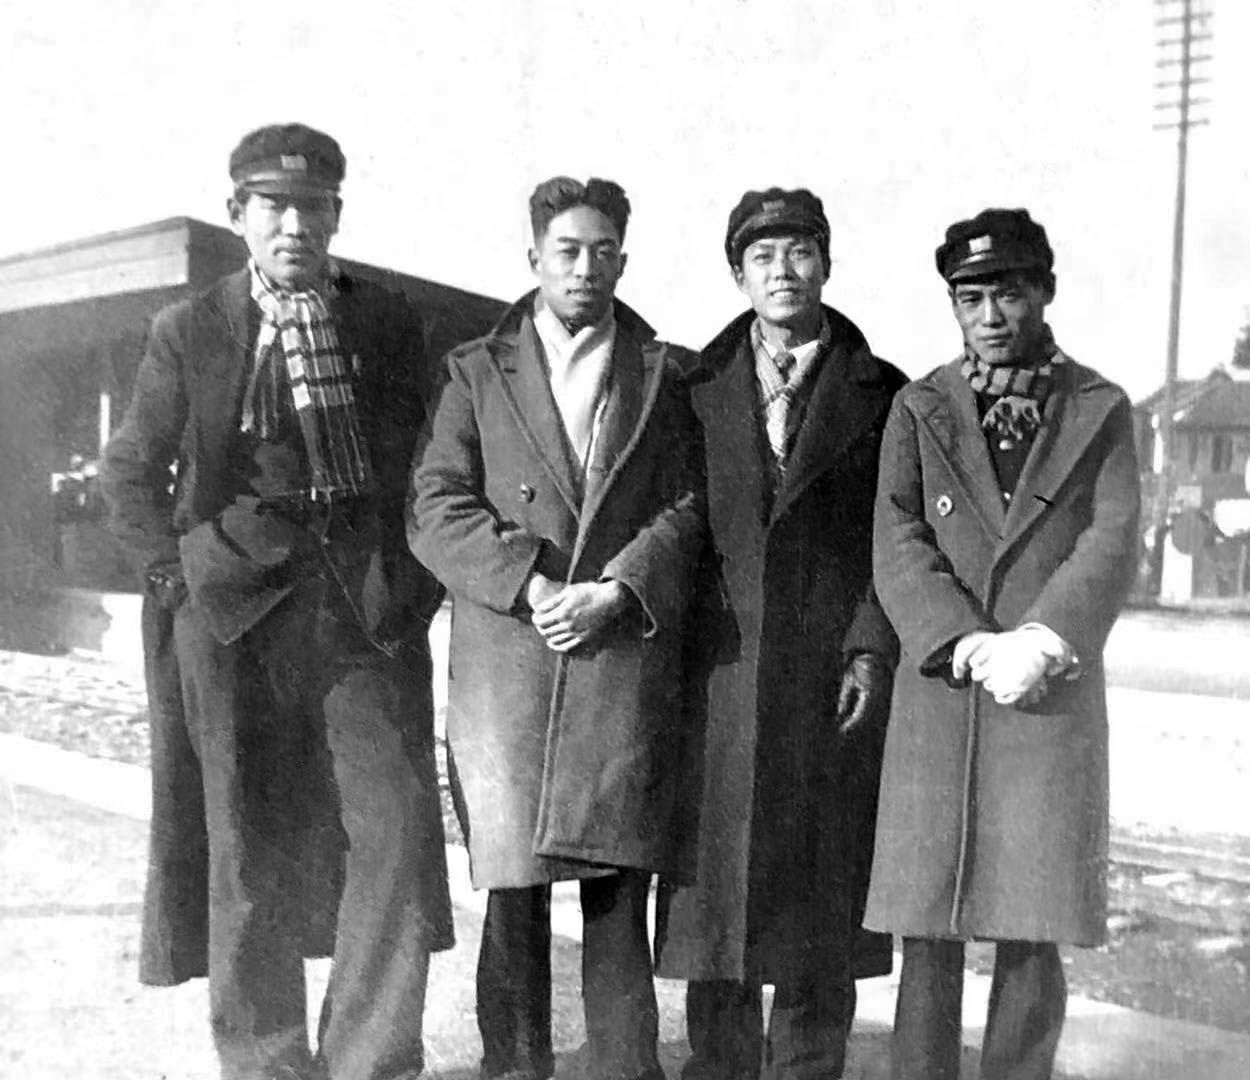 CHU Teh-Chun (à gauche) avec ses amis en Chine dans les années 1940-50.